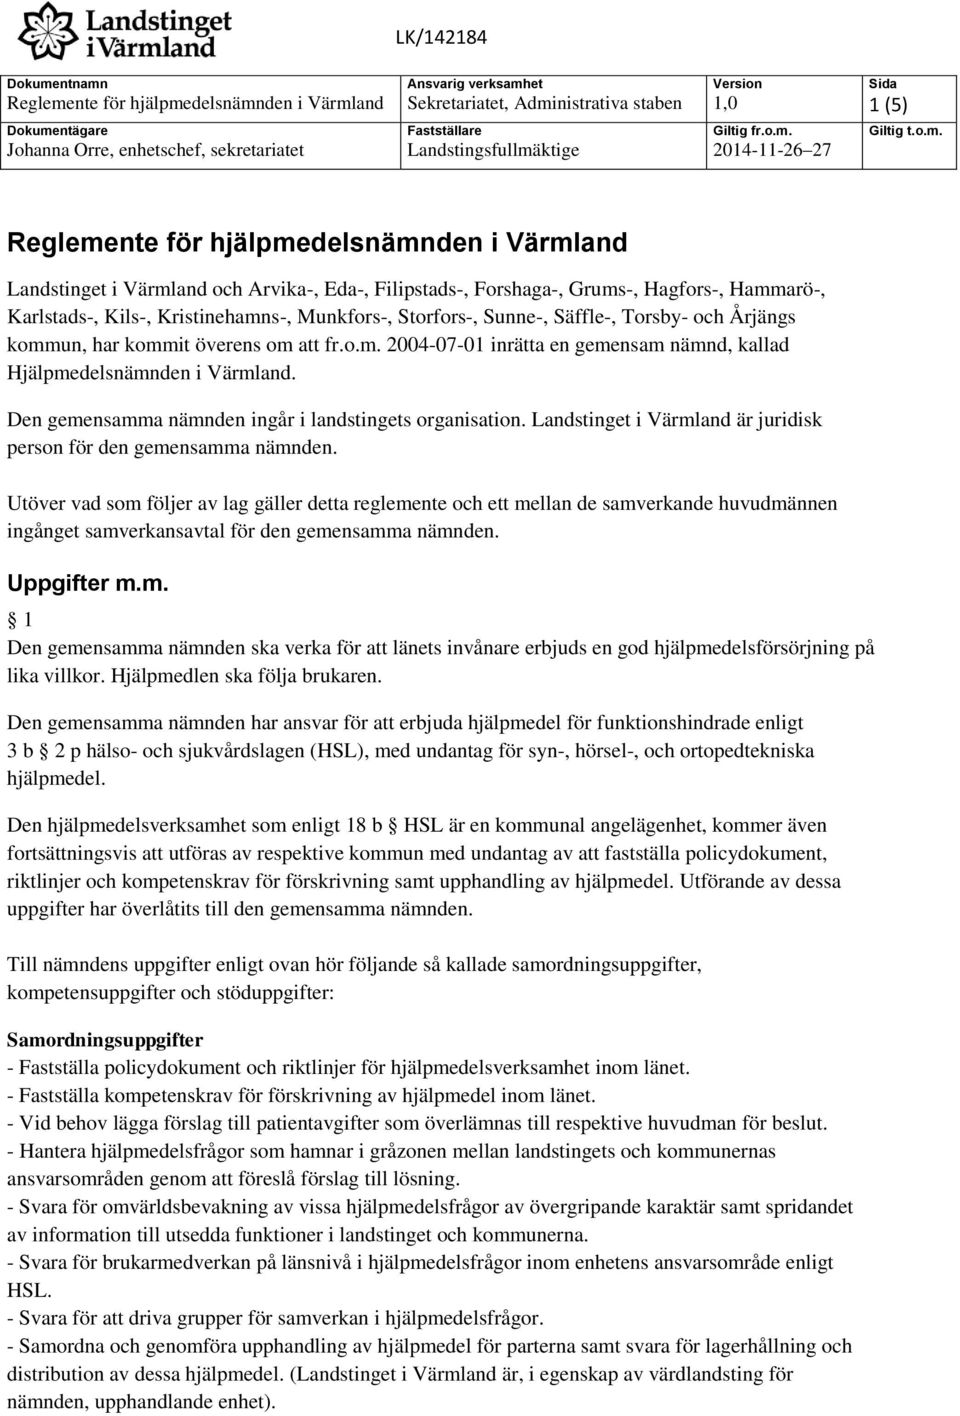 Den gemensamma nämnden ingår i landstingets organisation. Landstinget i Värmland är juridisk person för den gemensamma nämnden.